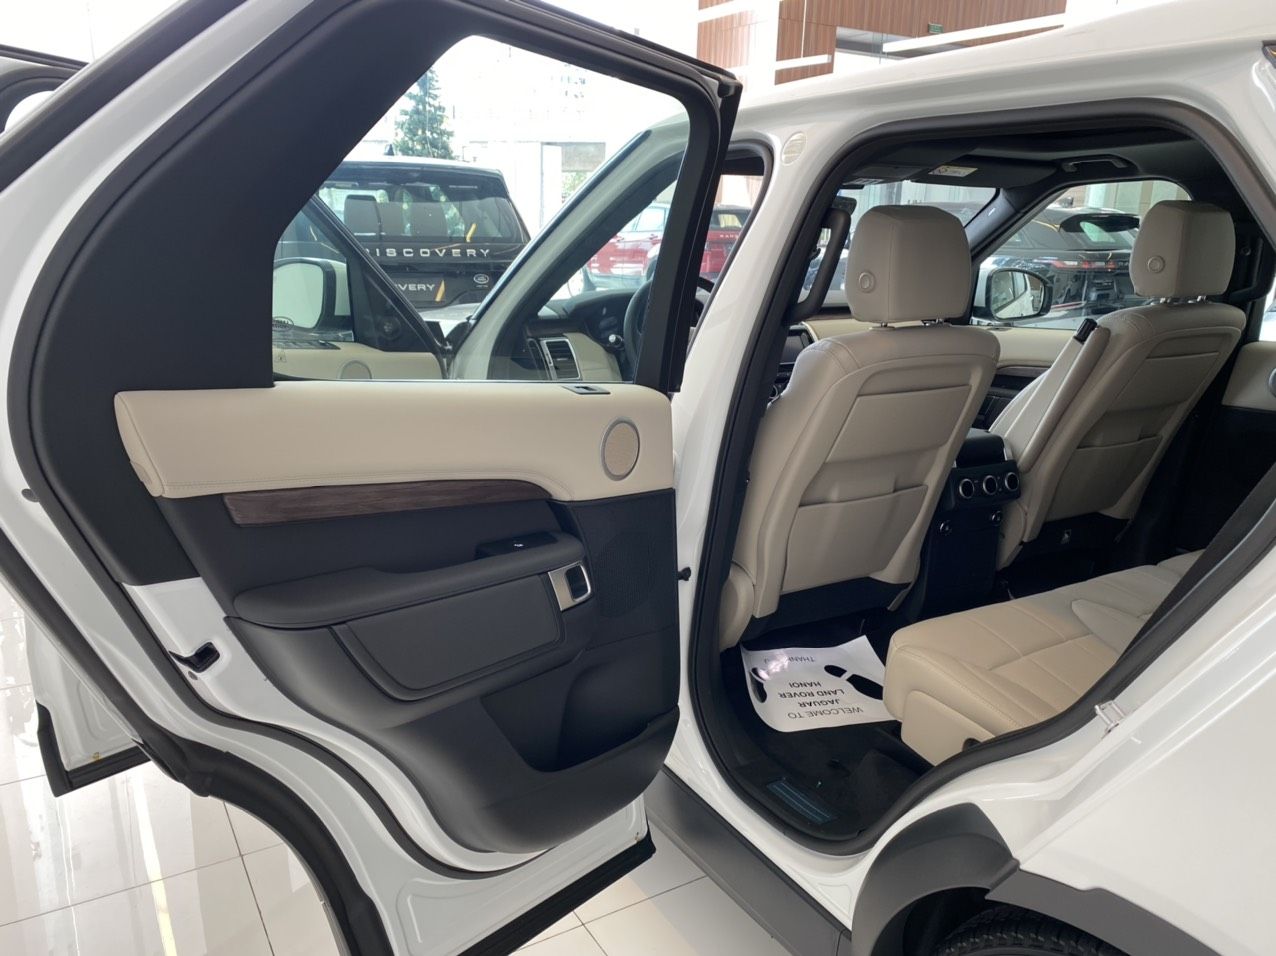 LandRover Discovery HSE  2019 - Giảm giá sốc cuối năm chiếc xe LandRover Discovery 2.0 HSE, sản xuất 2019, màu trắng, xe nhập khẩu